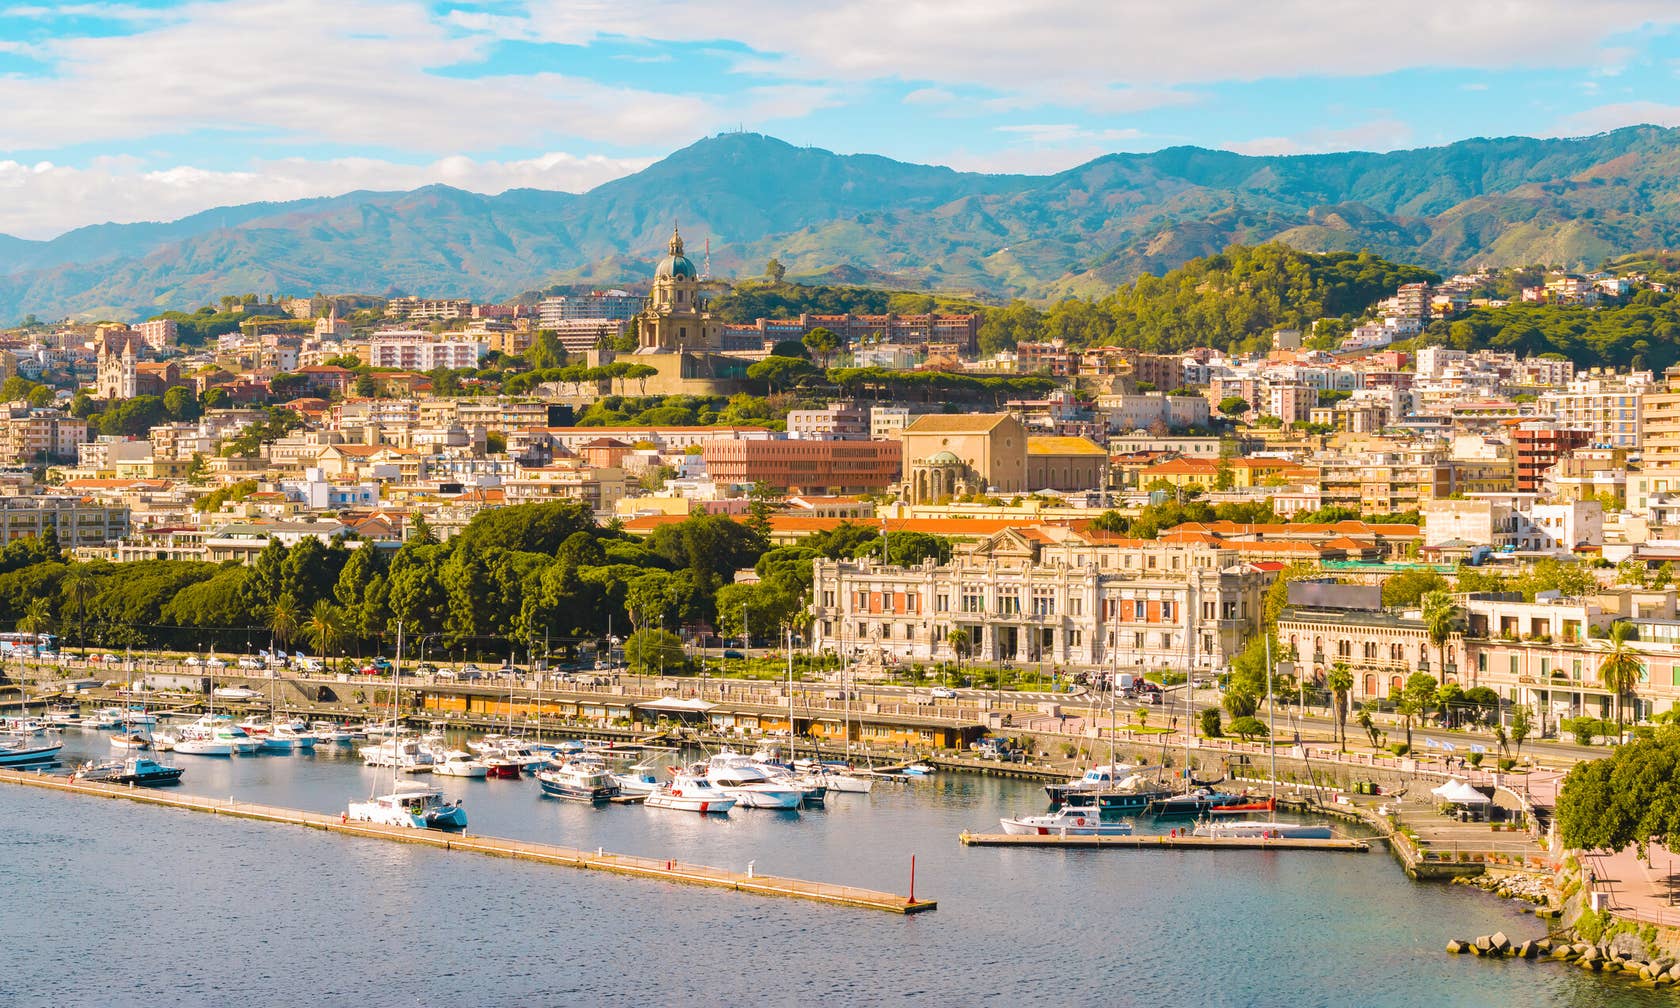 Bérbeadó nyaralók itt: Szicília